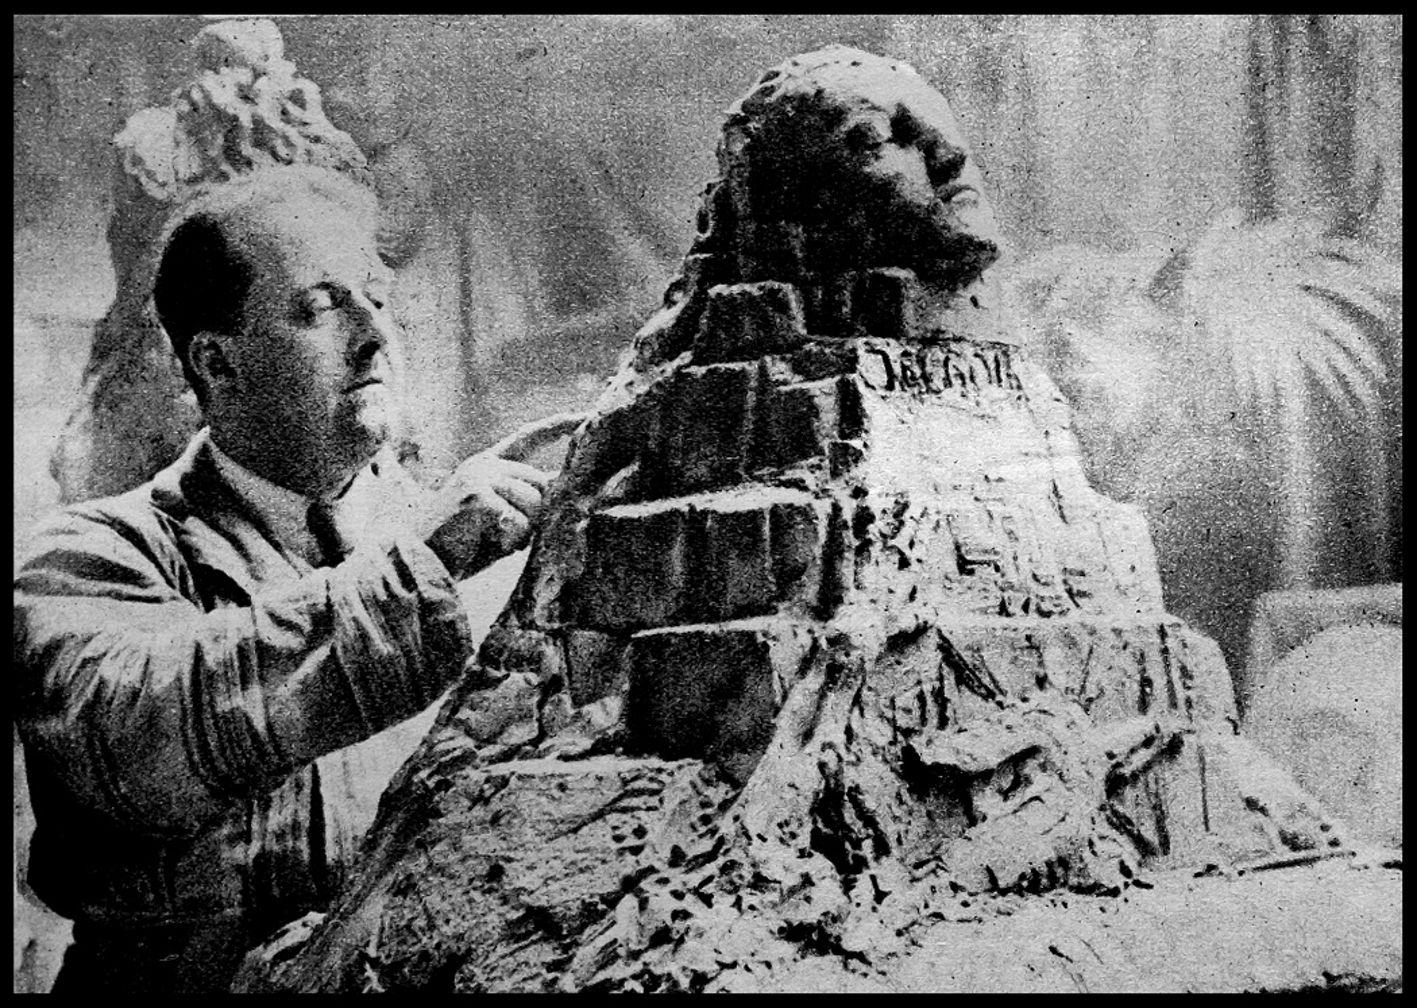 Real Del Sarte qui réalise la maquette du monument, avec son seul bras droit valide